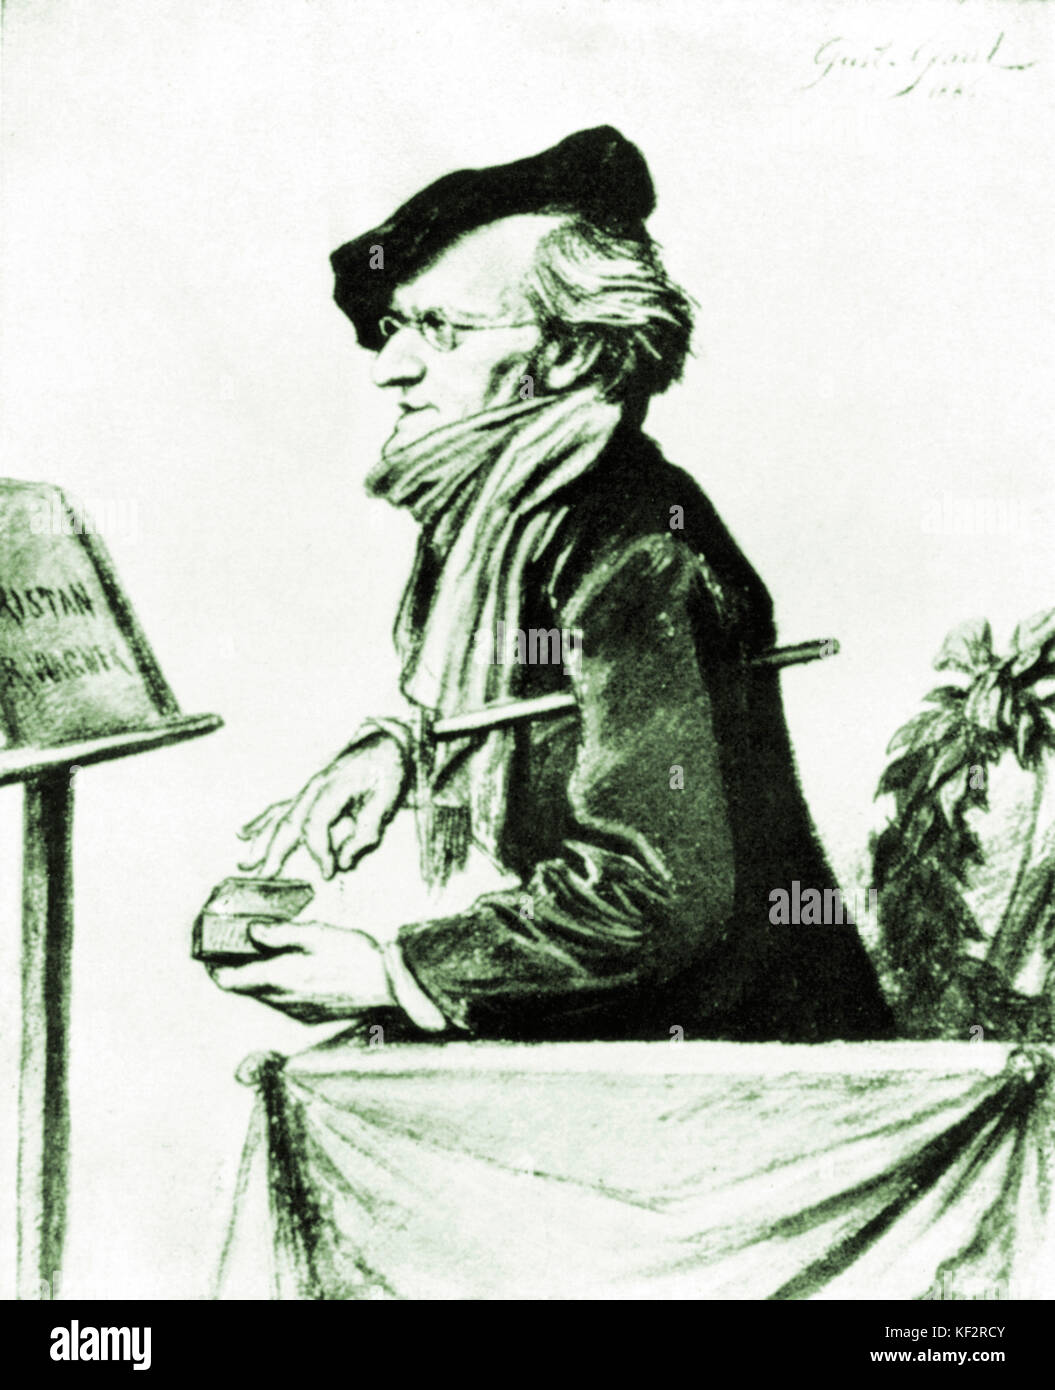 Richard Wagner ripassando "Tristano e Isotta", 1865 - caricatura di Gustav Gallia. Compositore tedesco & autore, 22 maggio 1813 - 13 febbraio 1883. Foto Stock